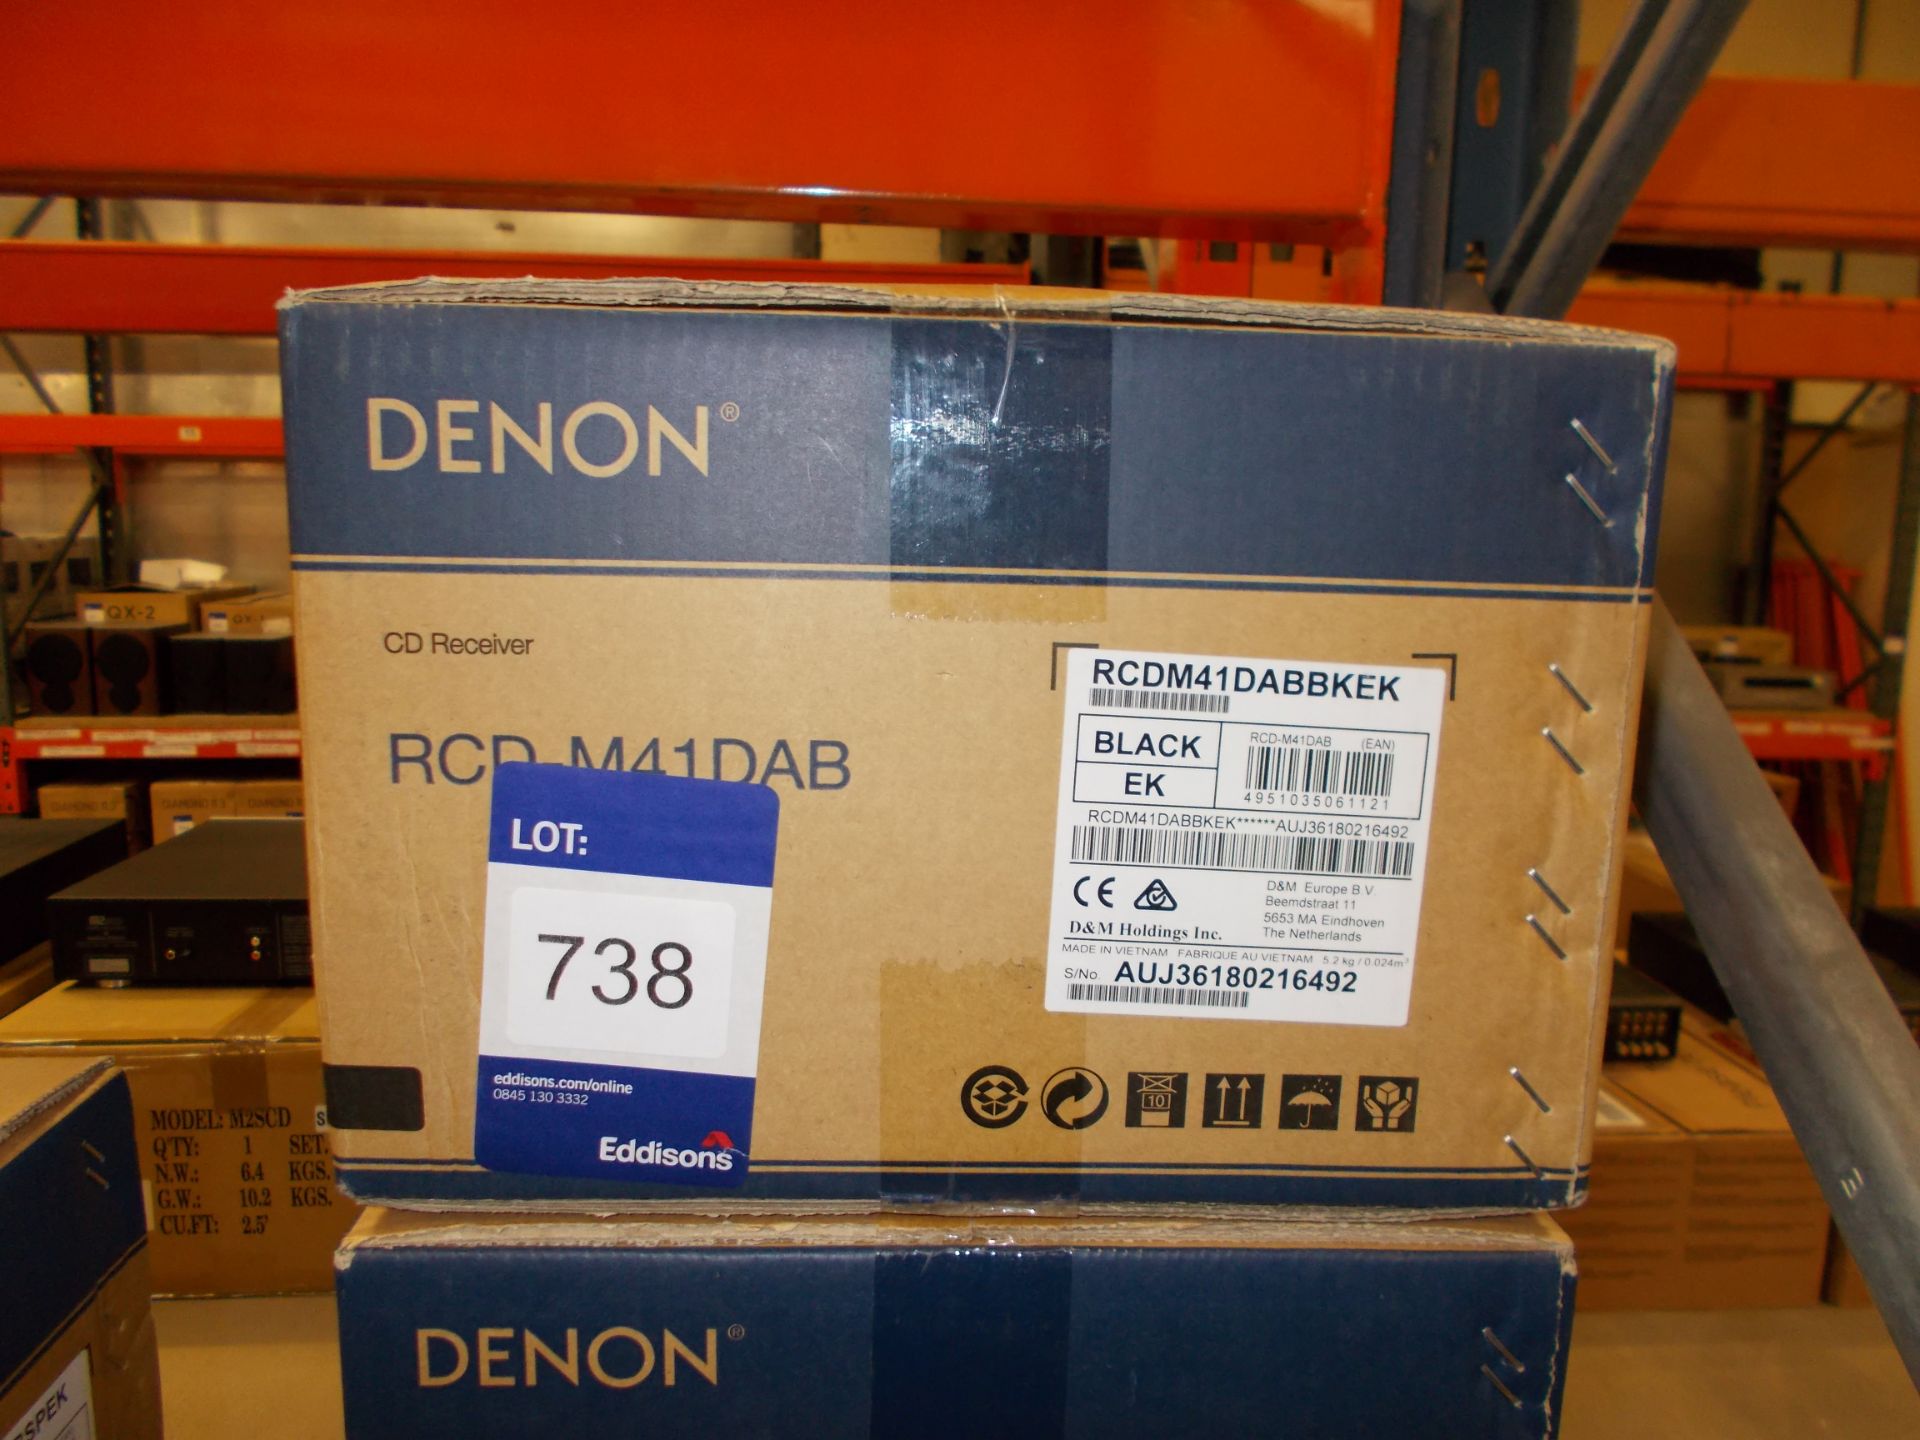 Denon RCD-M41 DAB Black CD Receiver with DAB Digital Radio (boxed) – RRP £229